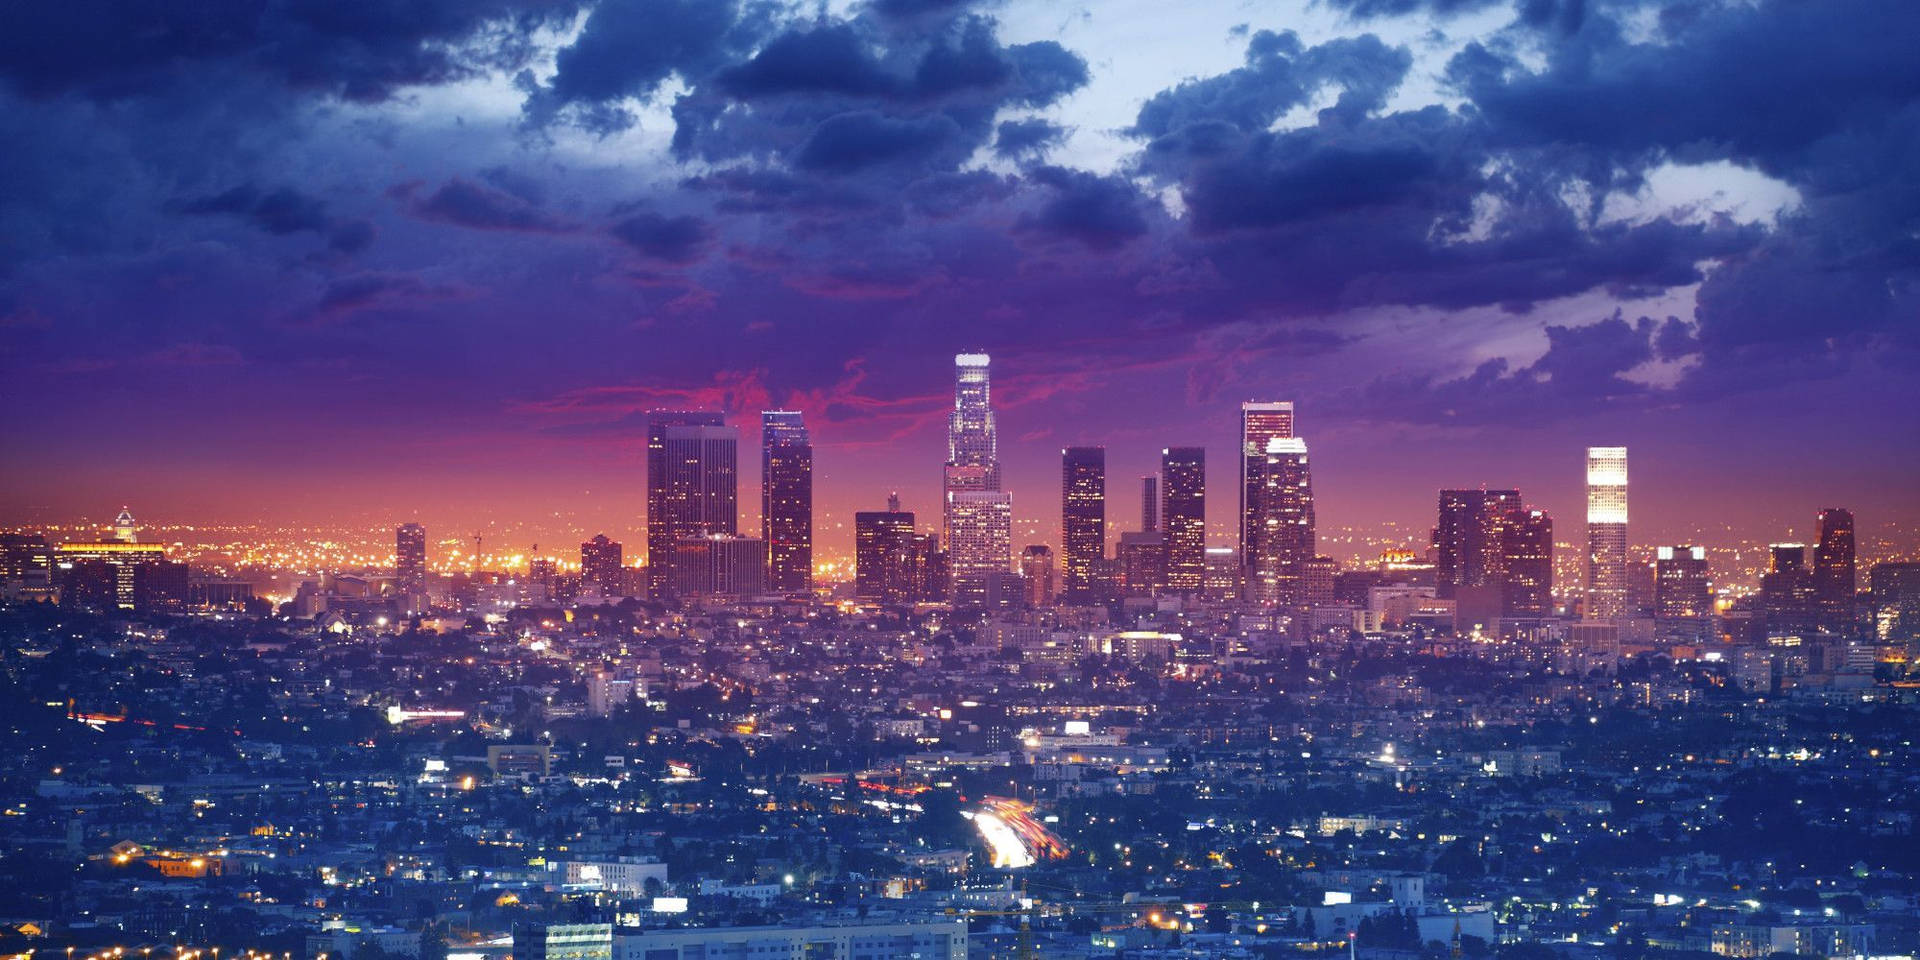 Cinematisksilhuettfoto Av Los Angeles I 4k-kvalitet. Wallpaper